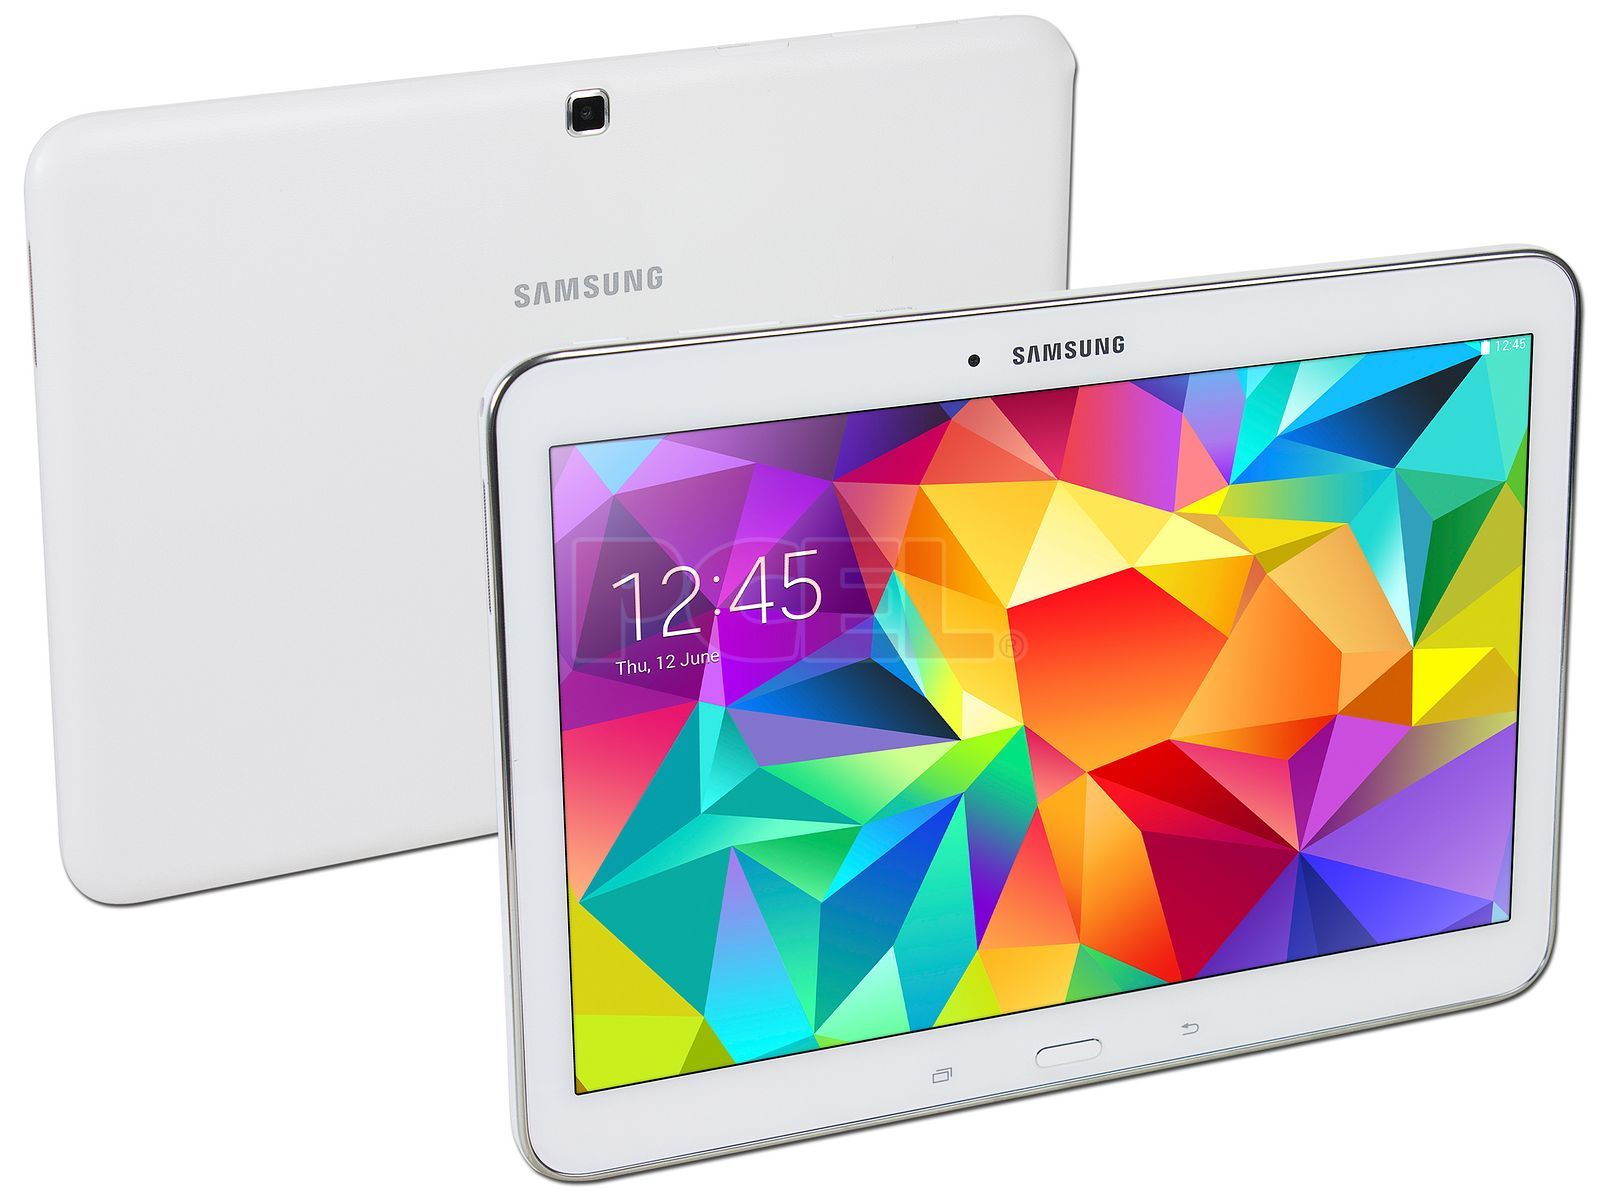 Tablet Samsung GALAXY Tab 4 con Android 4.4, Wi-Fi, 2 Cámaras, Pantalla  Multitouch de 10.1, 16 GB de memoria interna, Google Play Store y soporta  MicroSD.